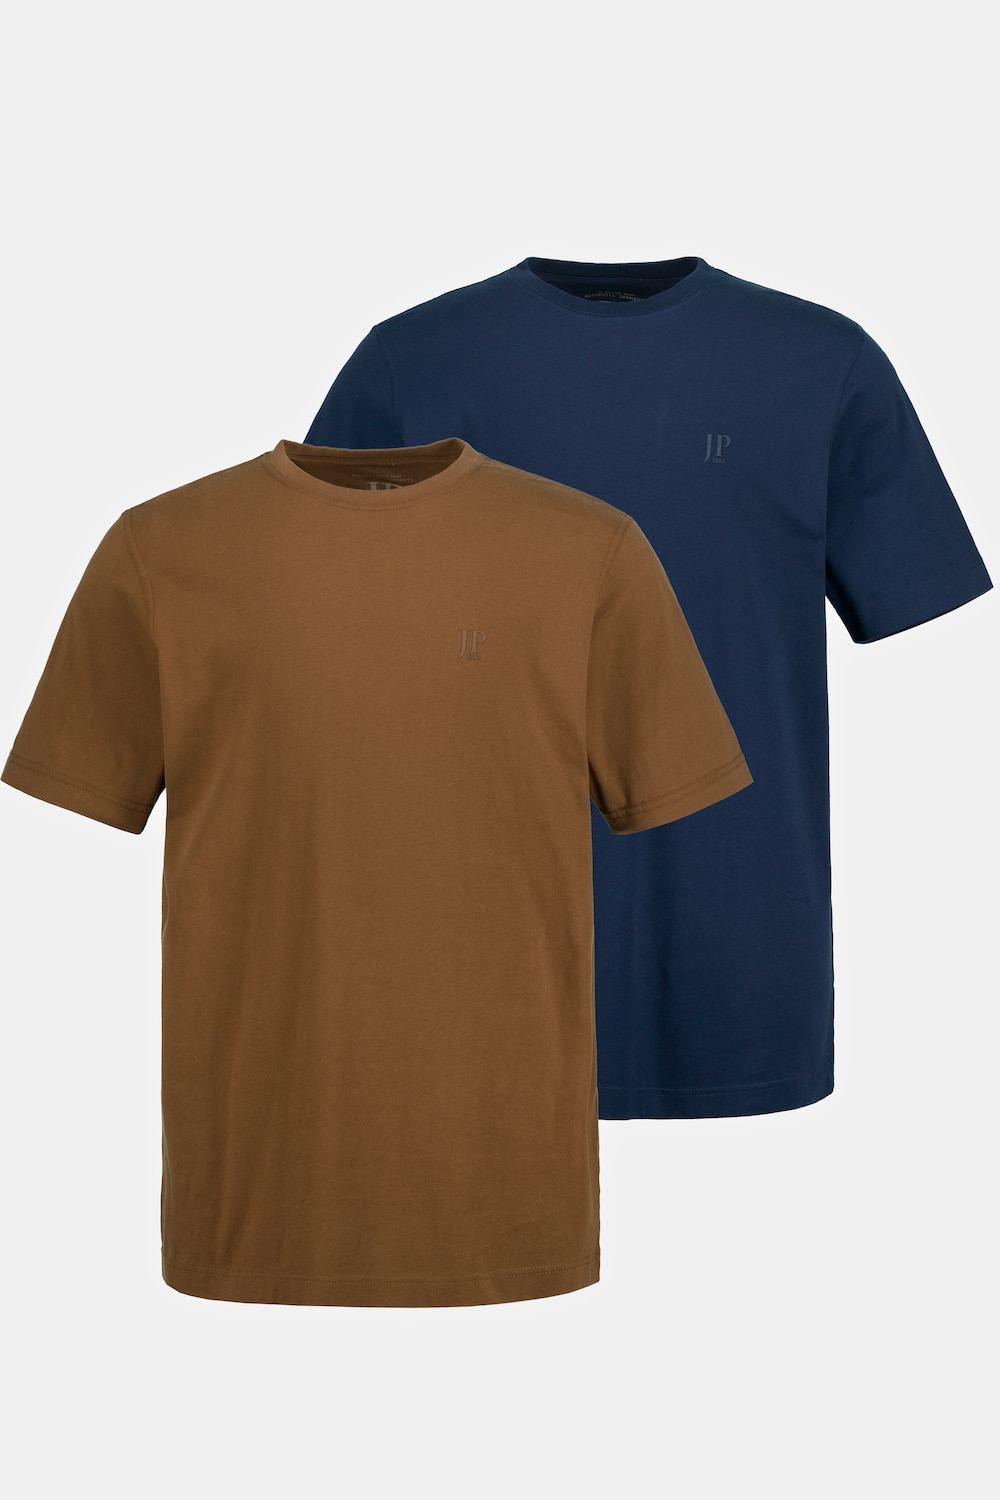 Grote Maten T-shirts, Heren, bruin, Maat: 8XL, Katoen, JP1880